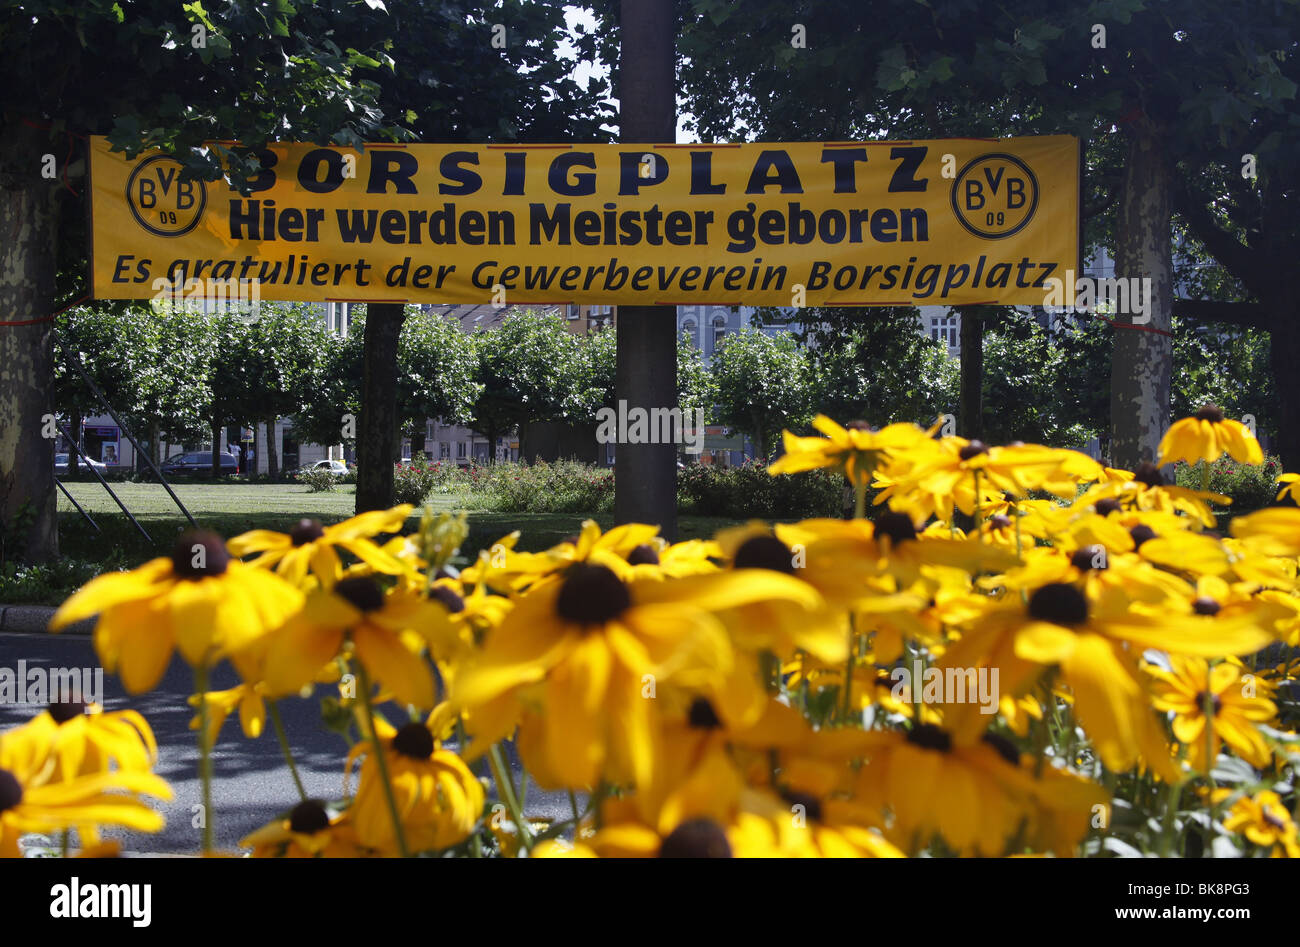 Borsigplatz cuadrado negro-amarillo con flores y banderas para conmemorar el centenario del club de fútbol Borussia Dortmund. Foto de stock